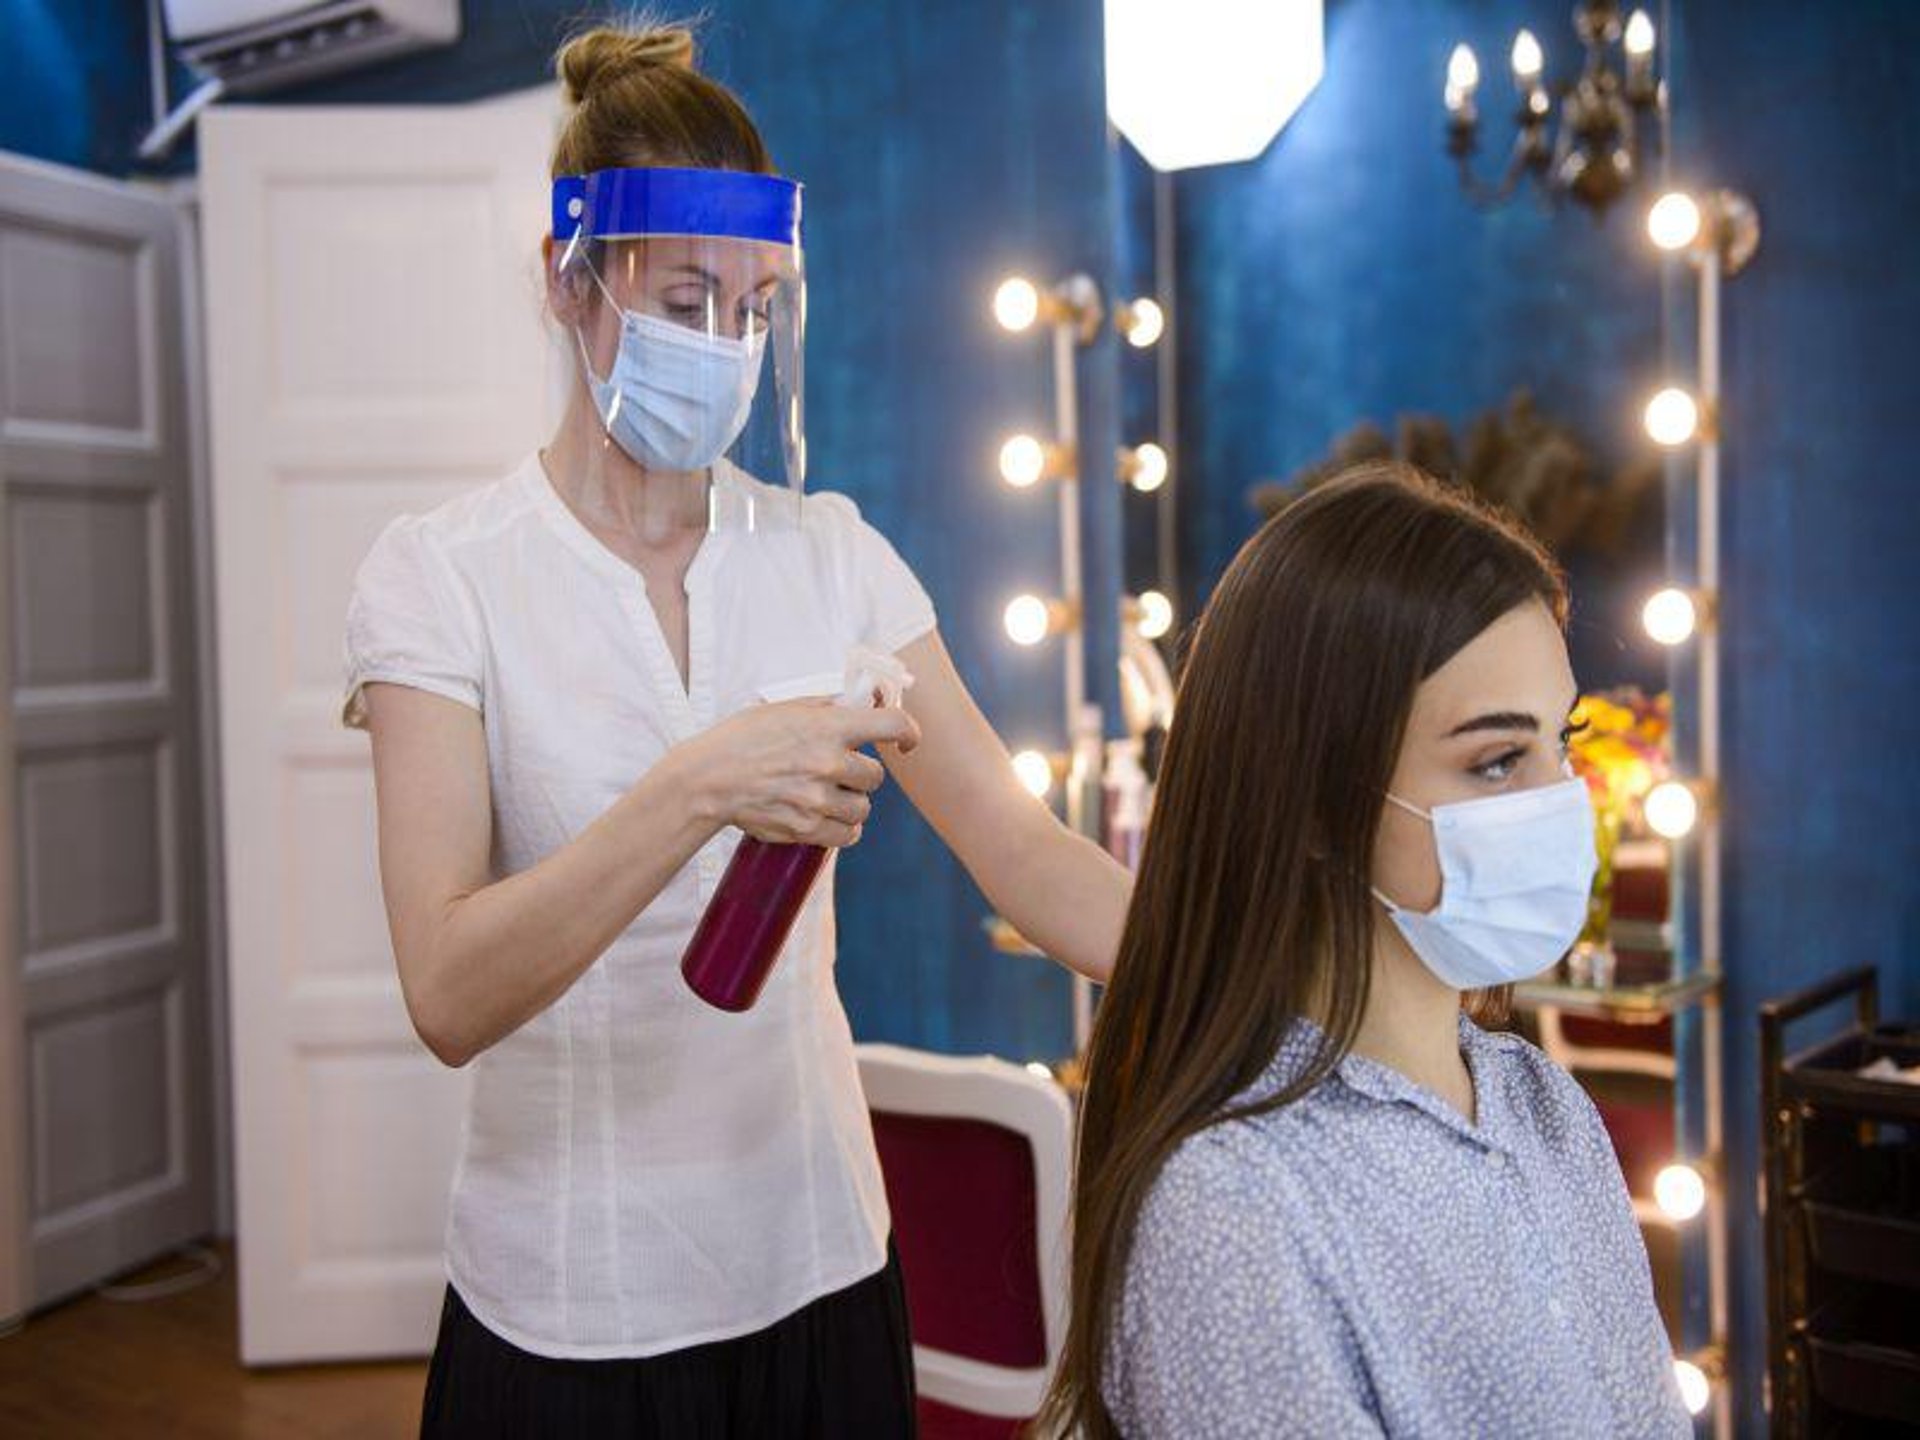 Hair Salon Talk Can Spread COVID, But Face Shields Cut the Danger thumbnail